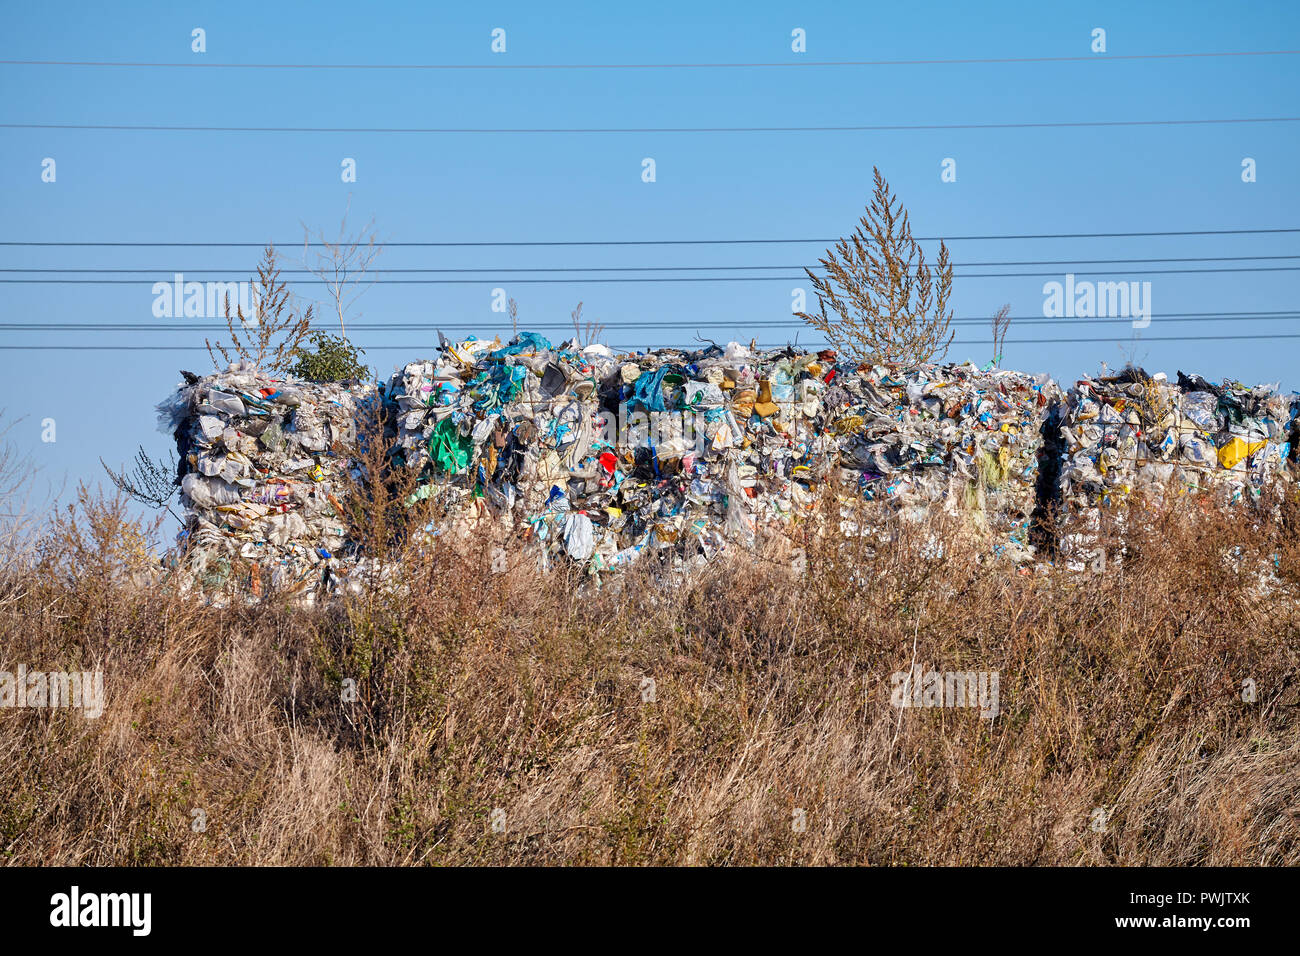 Immagine di un dump di nascosto sito, concetto ambientale. Foto Stock